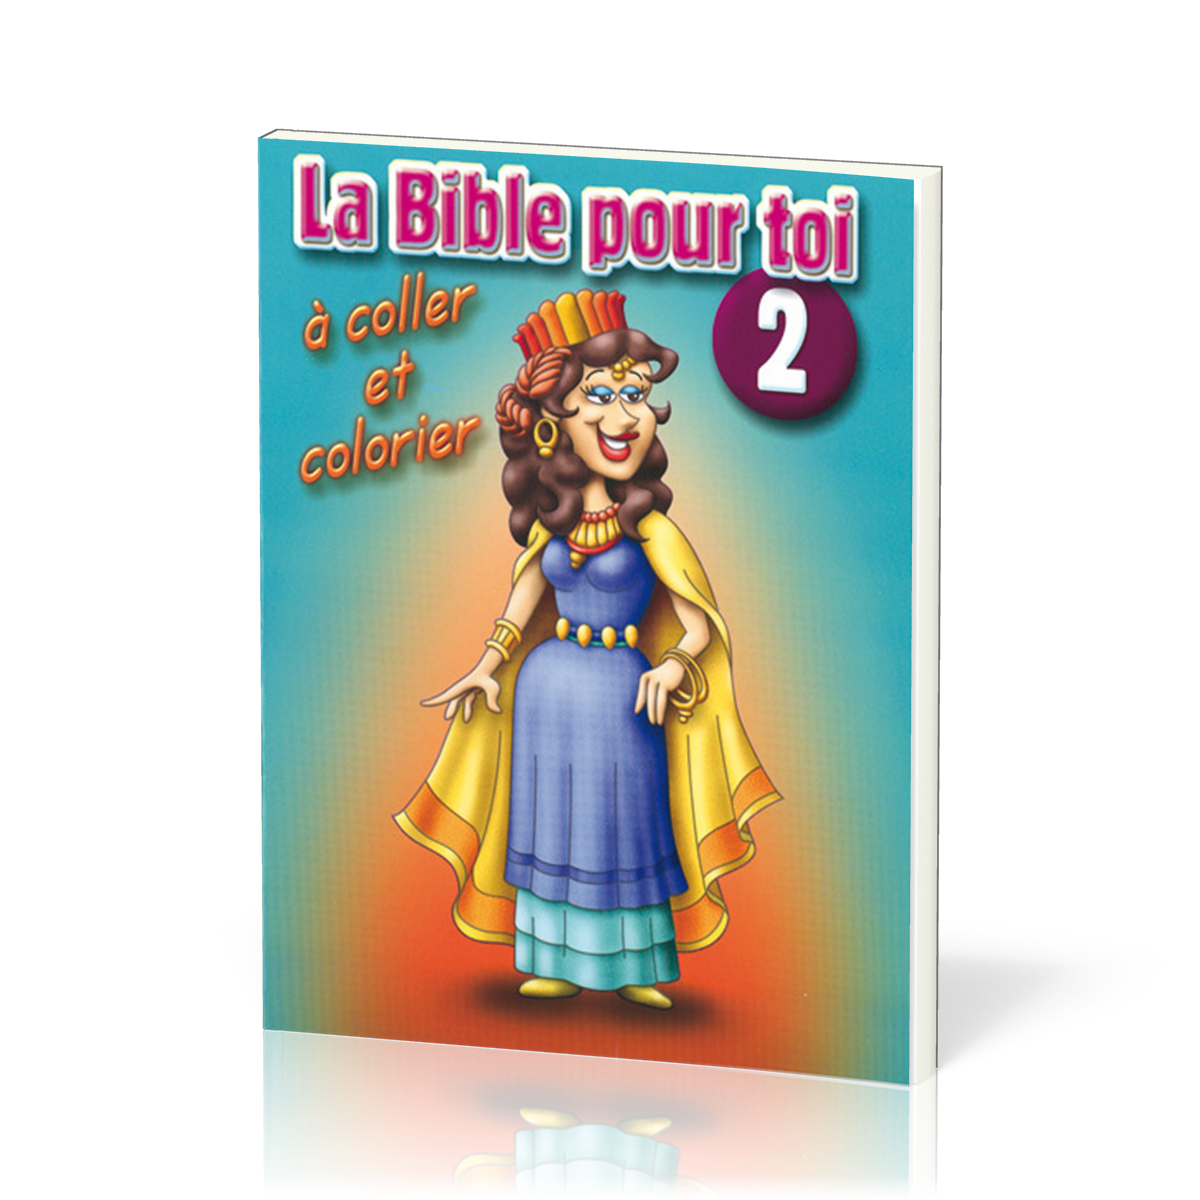 Bible pour toi (La), No 2 - à coller et colorier